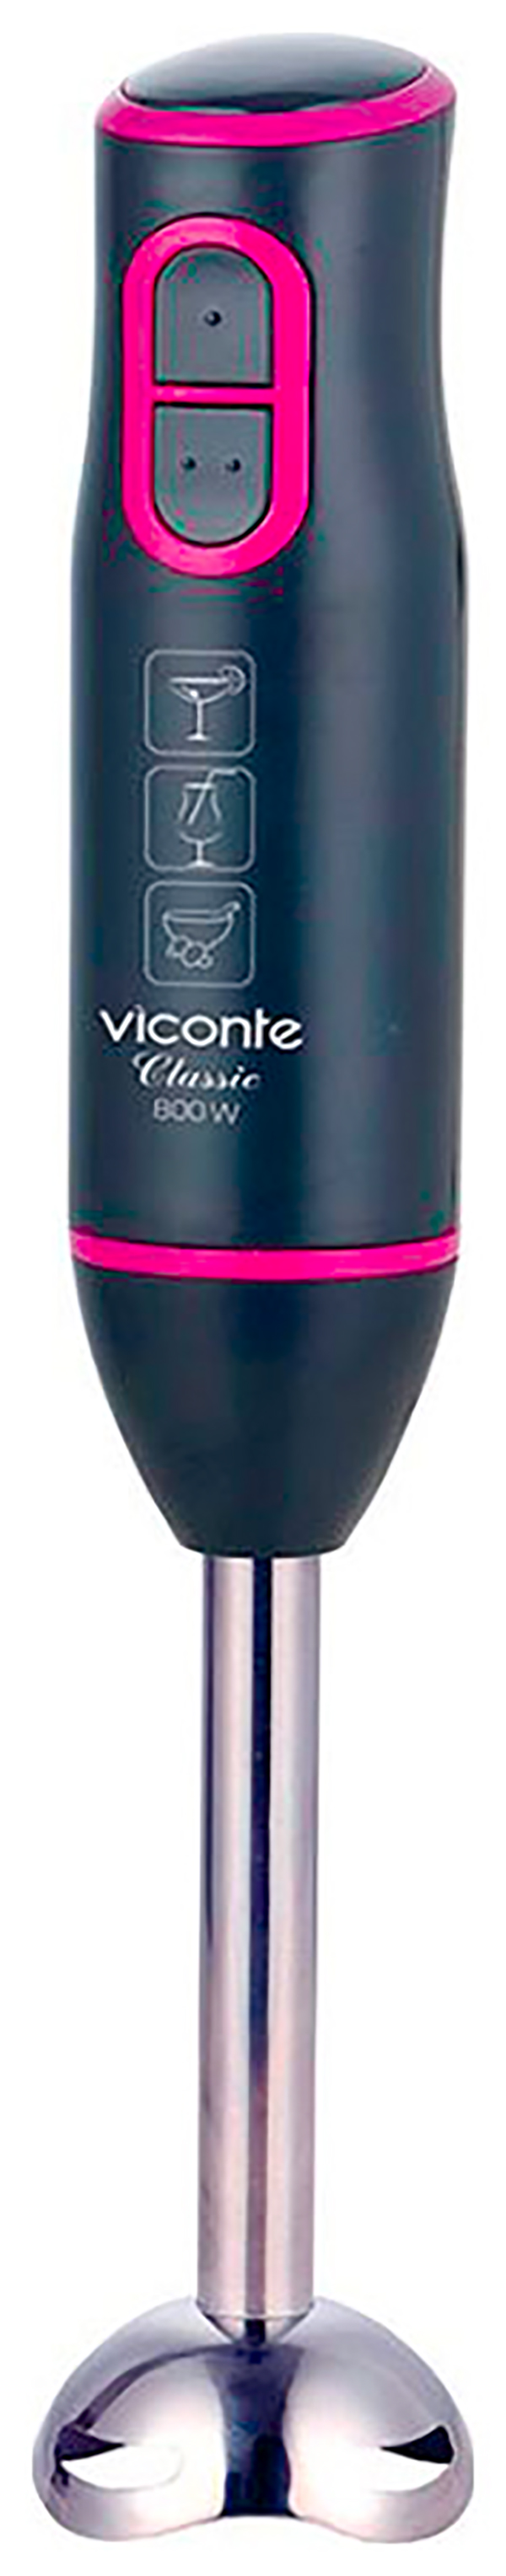 Погружной блендер Viconte VC-4440 фиолетовый, черный погружной блендер marta mt 1575 фиолетовый